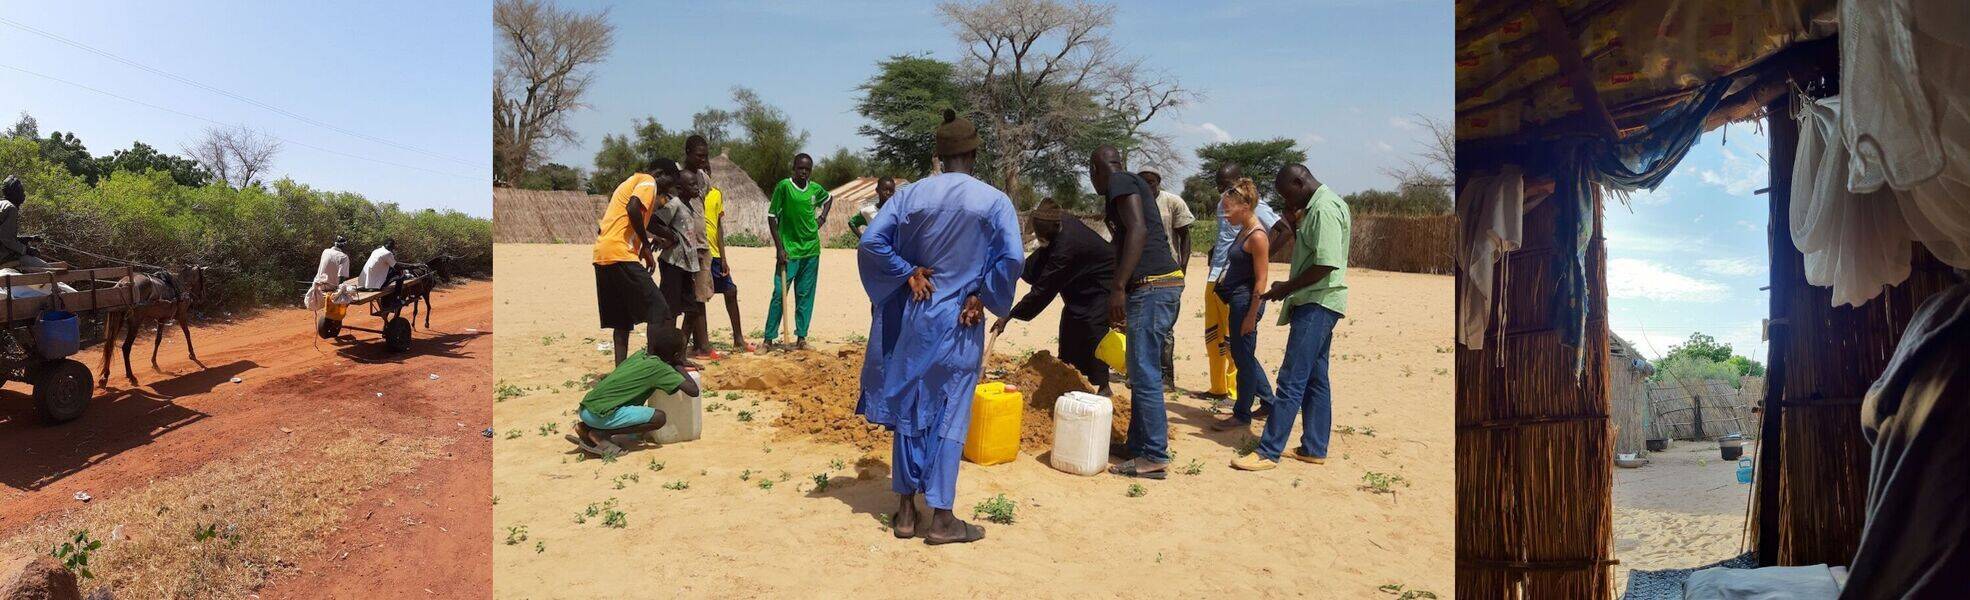 Freiwilligenarbeit im ökologischen Hausbau im Senegal